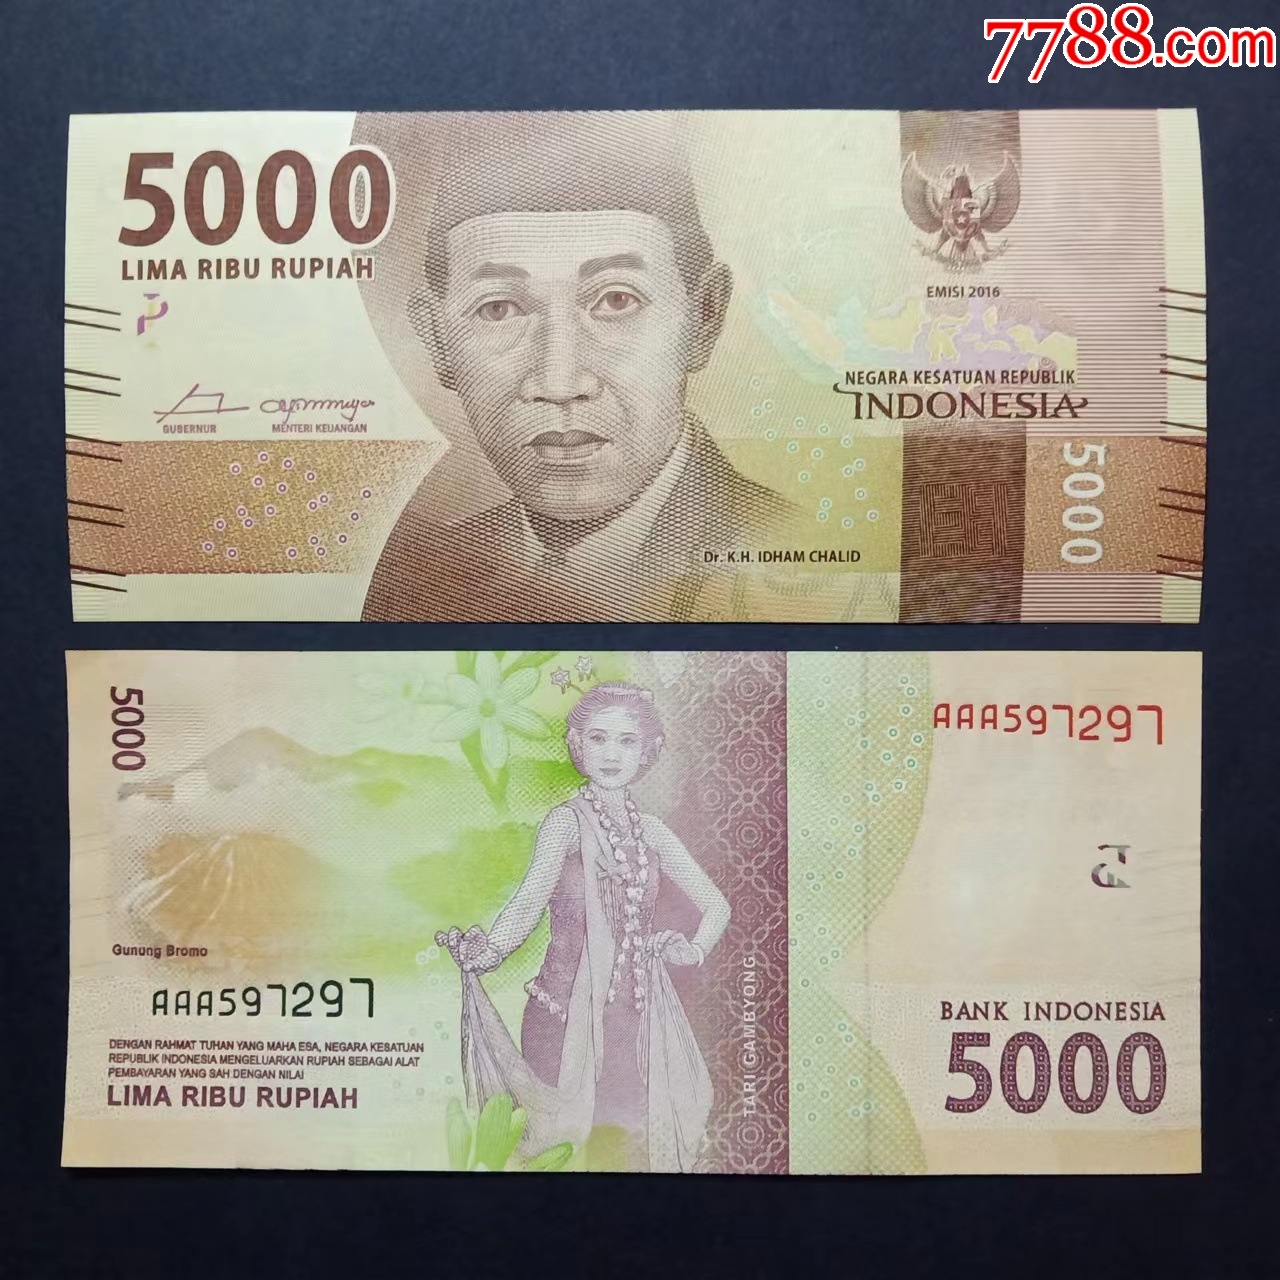 印尼原币 库存图片. 图片 包括有 支付, 印度尼西亚, 贷款, 收入, 聚会所, 货币, 新建, 商业 - 237314367